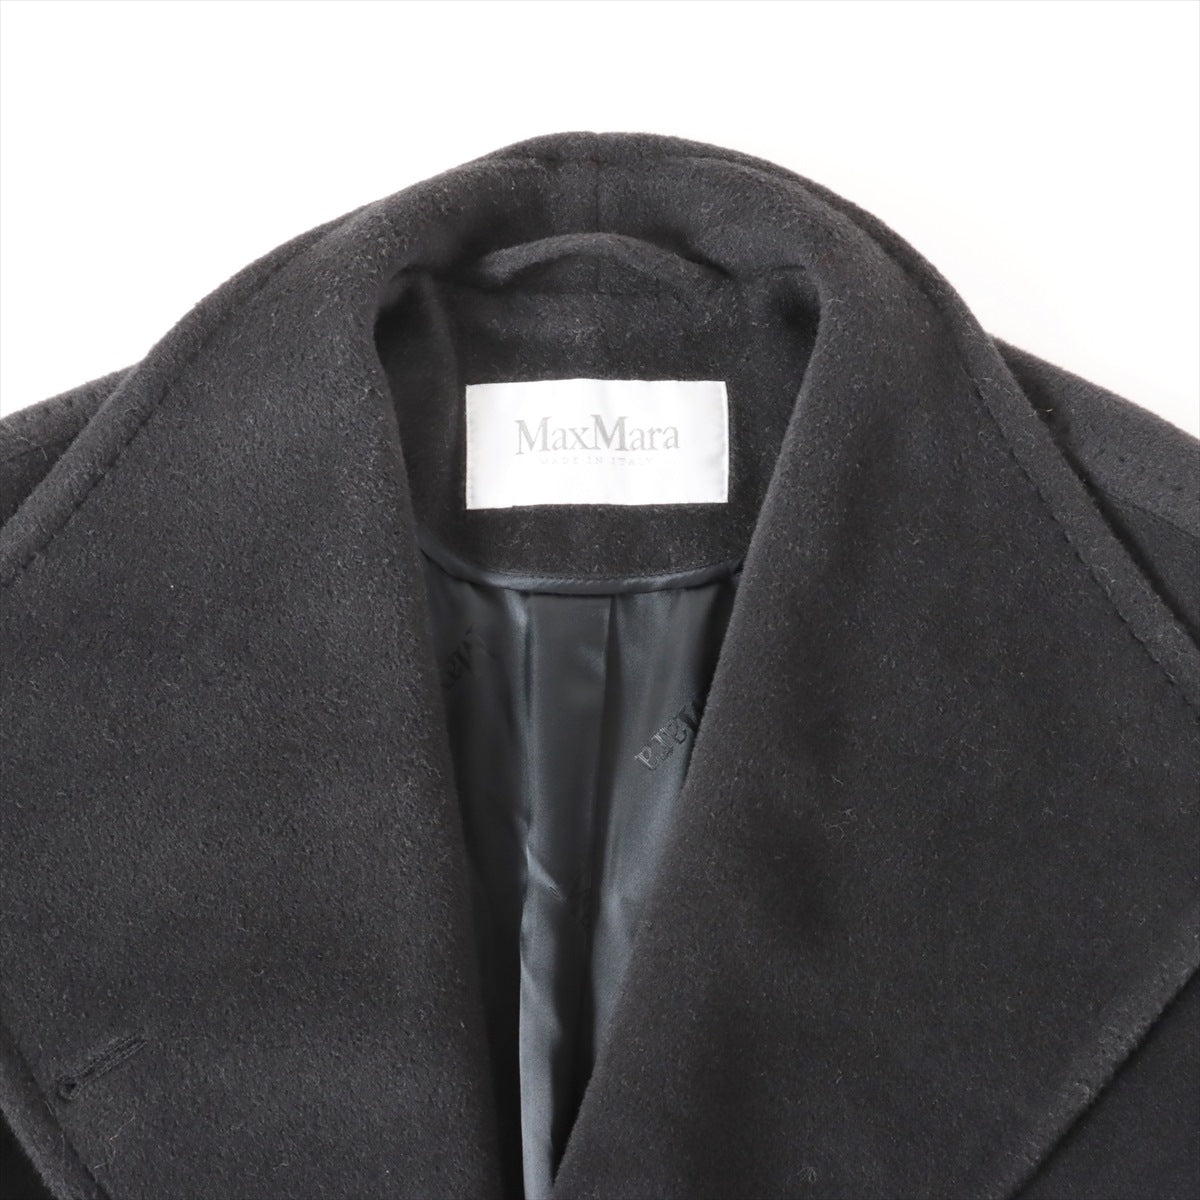 マックスマーラ ウール×カシミヤ コート 44 レディース ブラック  裾に毛抜けあり